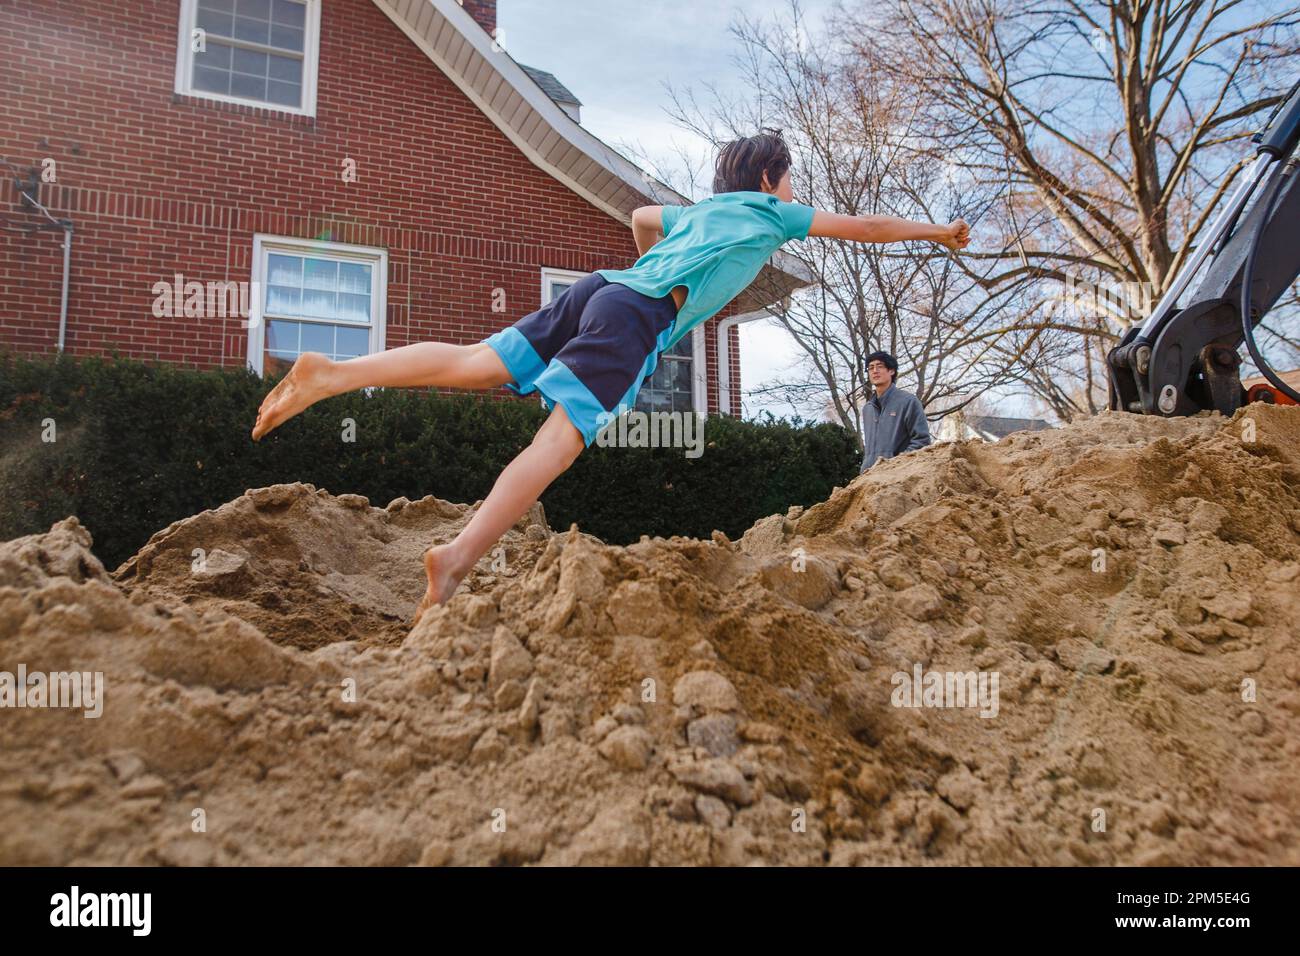 Un ragazzo a piedi nudi salta in un enorme mucchio di sabbia mentre il padre guarda Foto Stock